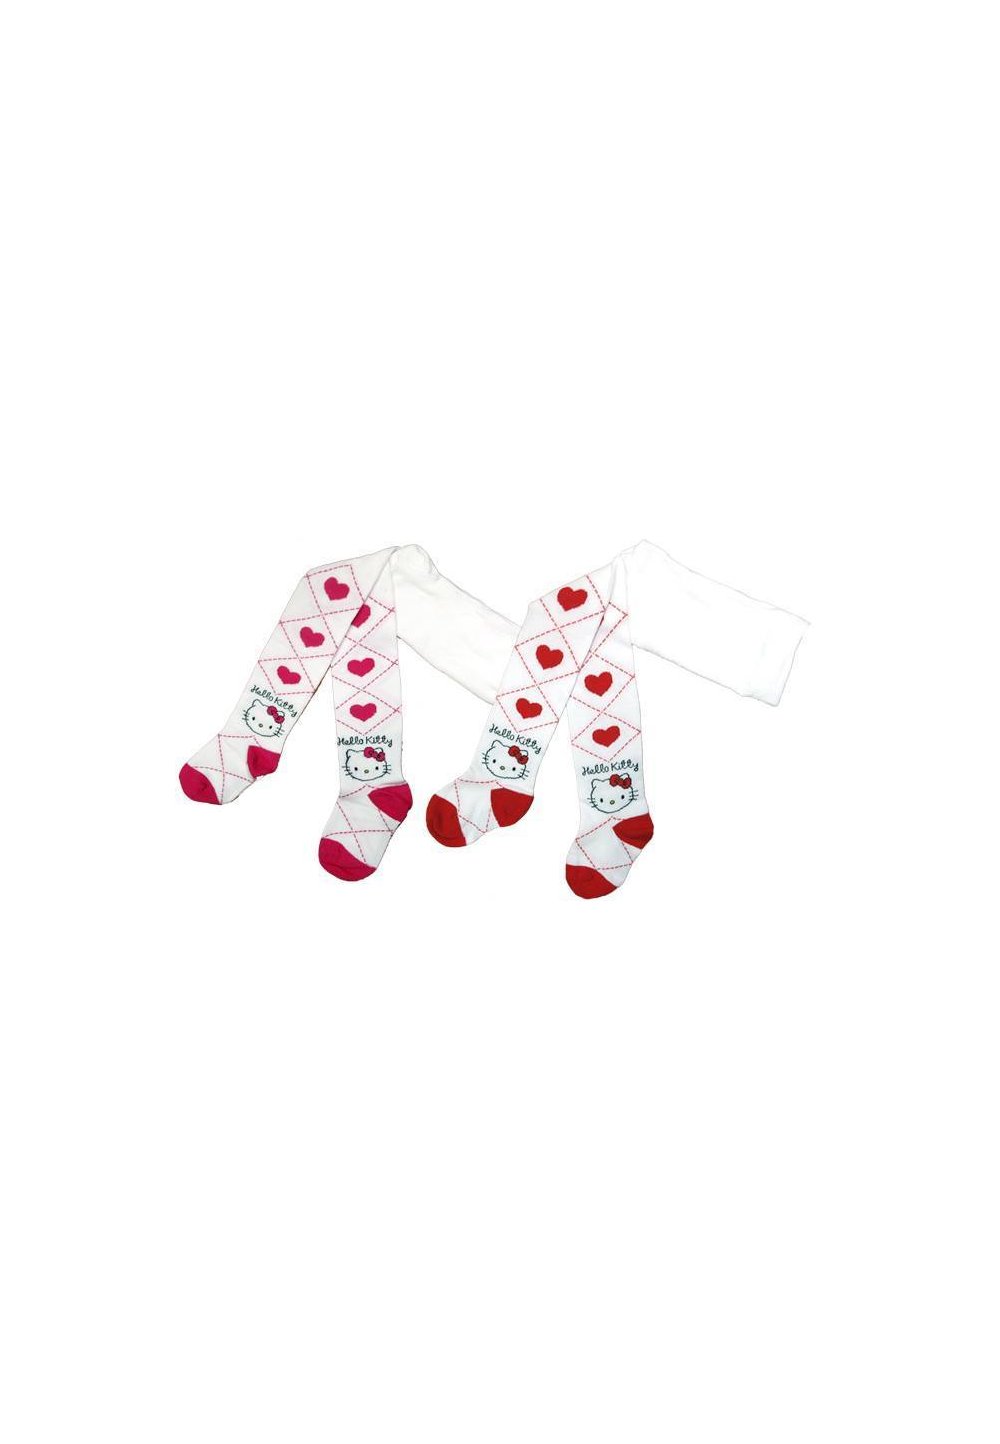 Ciorapi cu chilot HK 2991 rosu Prichindel